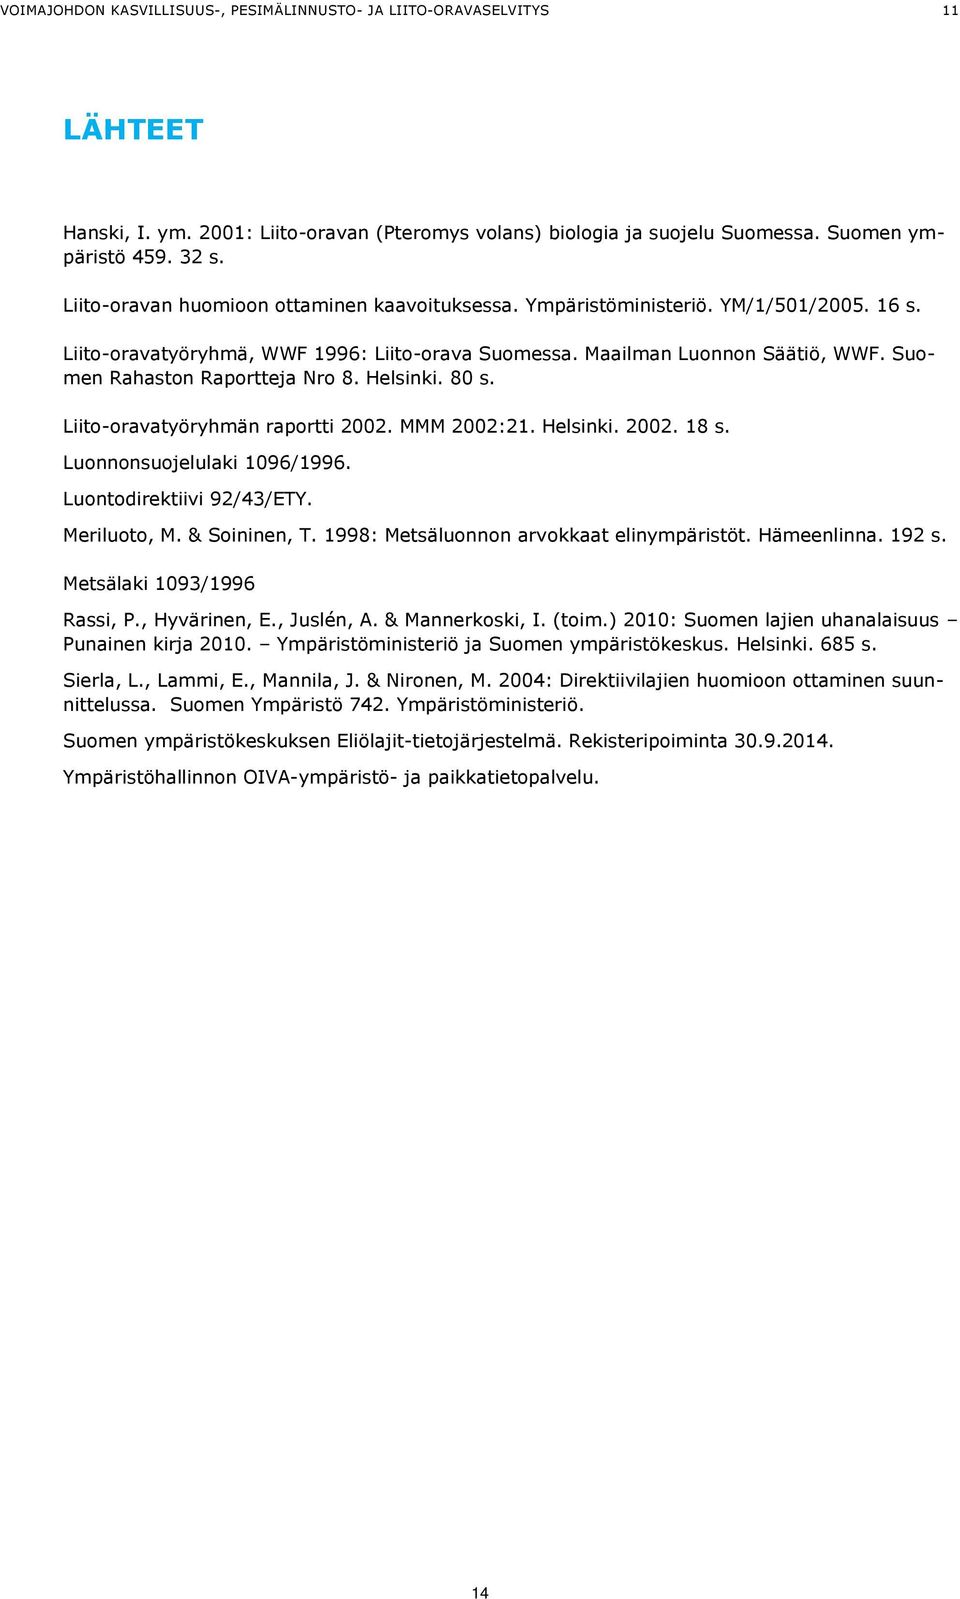 Suomen Rahaston Raportteja Nro 8. Helsinki. 80 s. Liito-oravatyöryhmän raportti 2002. MMM 2002:21. Helsinki. 2002. 18 s. Luonnonsuojelulaki 1096/1996. Luontodirektiivi 92/43/ETY. Meriluoto, M.